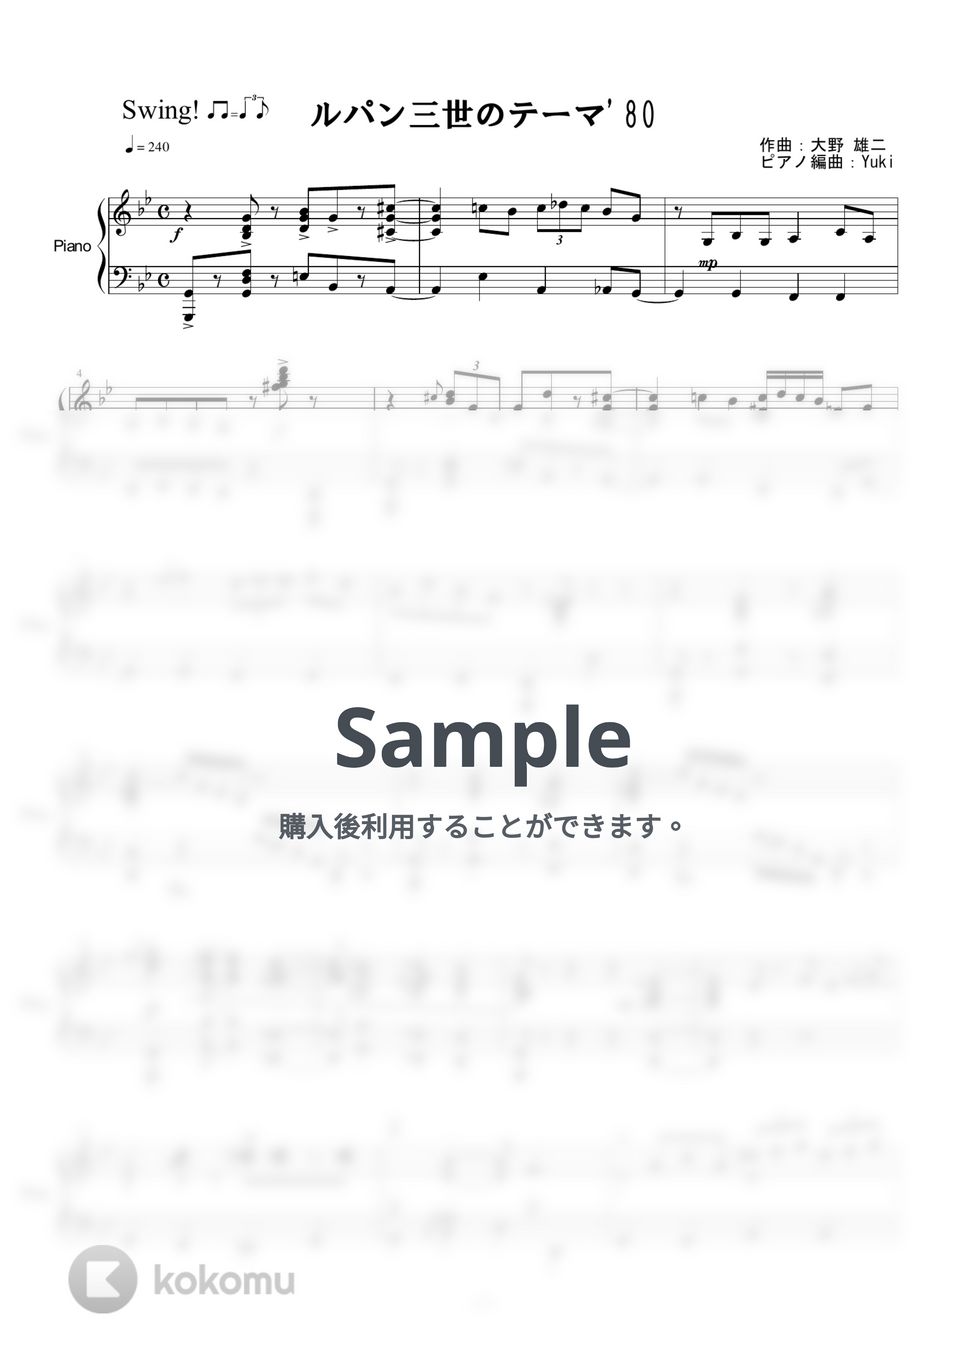 大野雄二 - ルパン三世のテーマ'80 by Yuki＠ピアノの先生